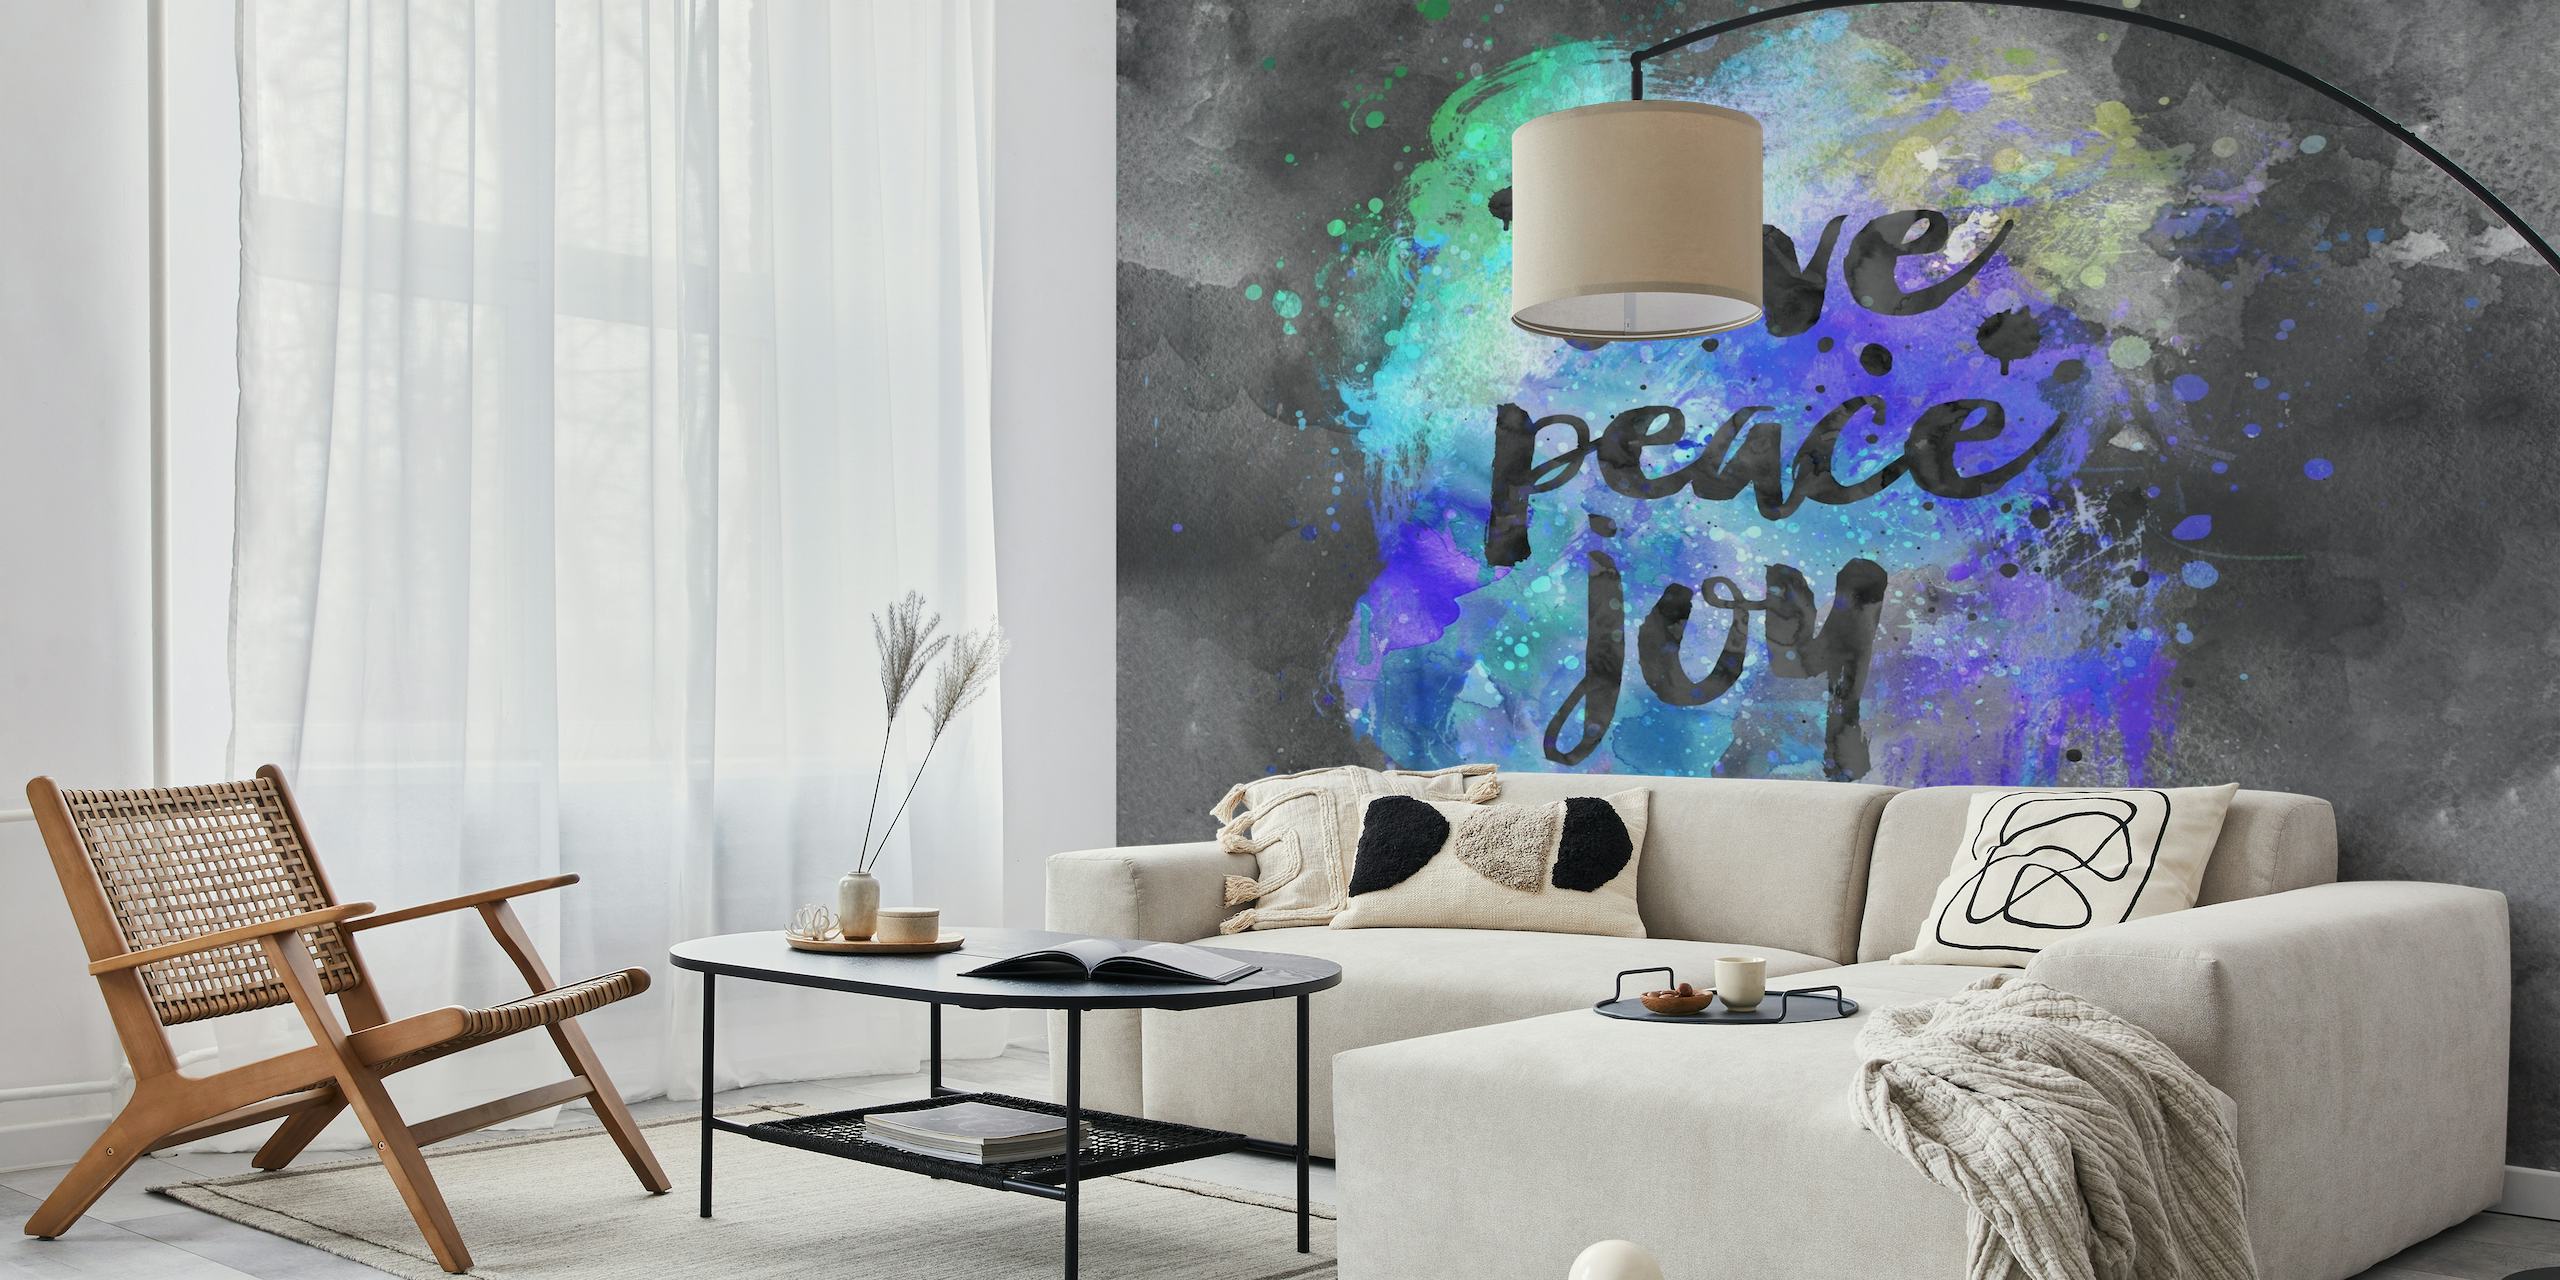 Apstraktna ljubav mir radost kaligrafski zidni mural s akvarel pozadinom